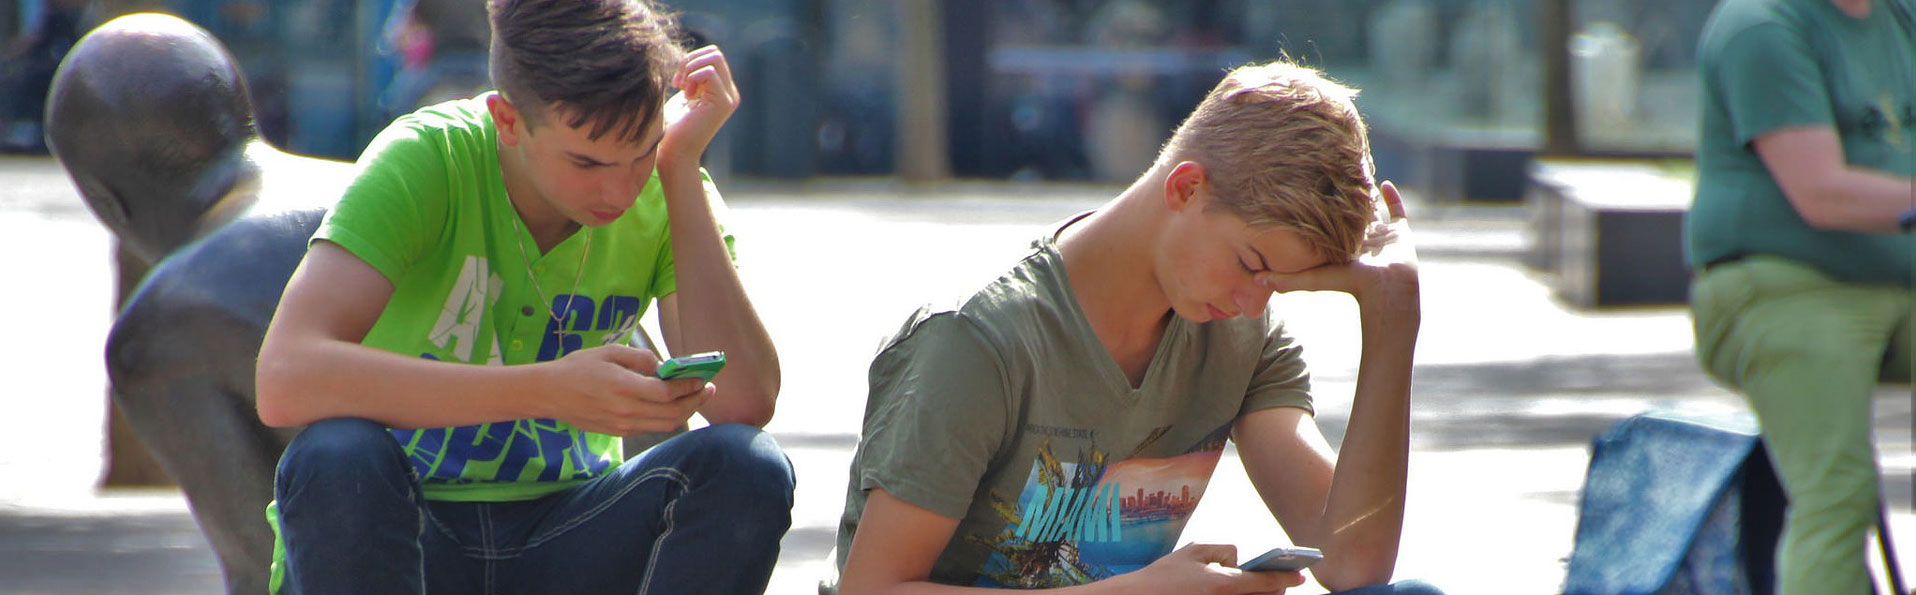 Ungdomar som spelar spel på sin mobil